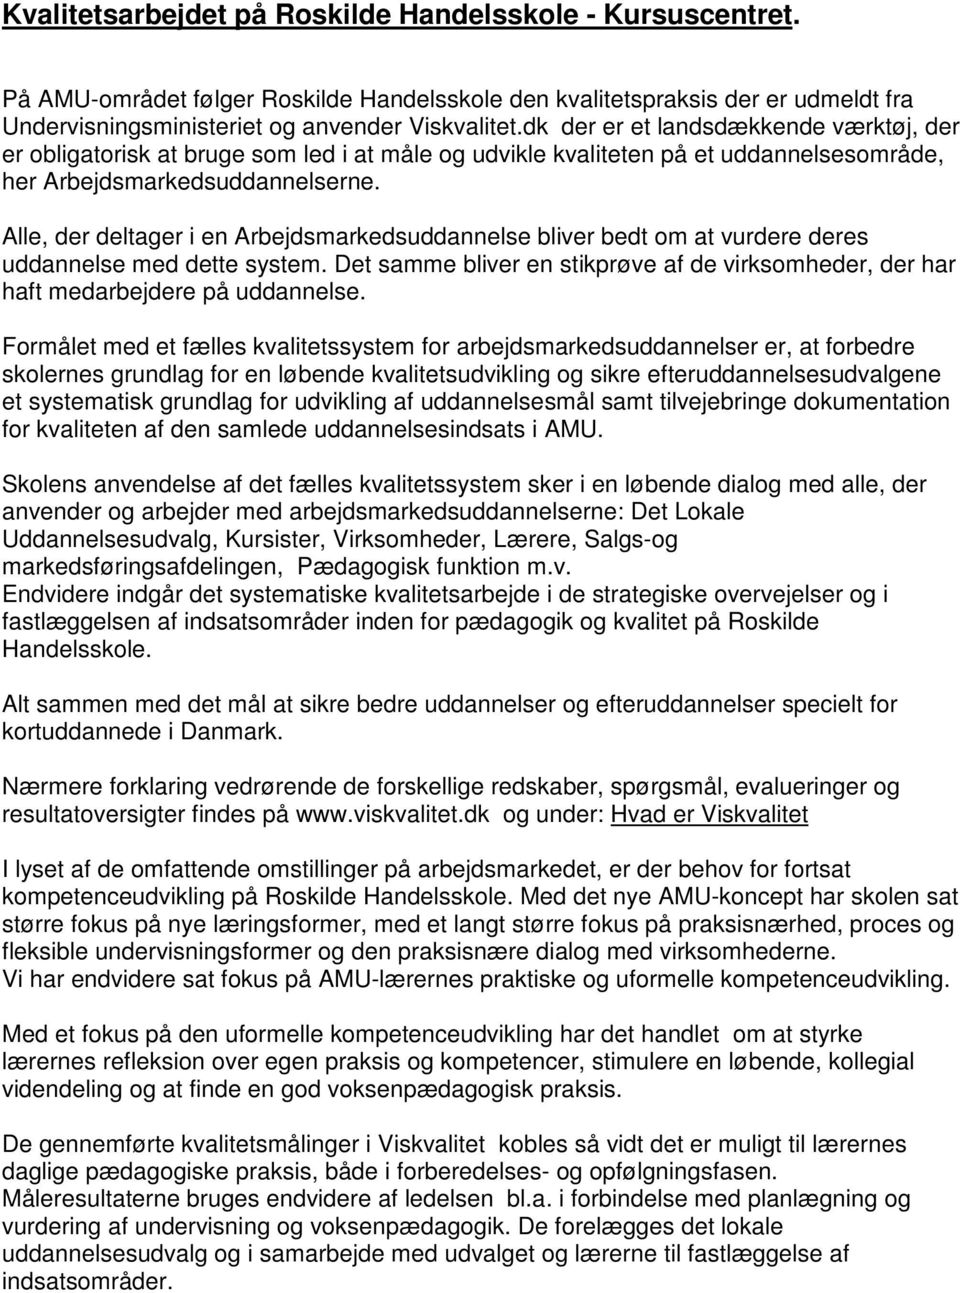 Kvalitetsarbejdet på Roskilde Handelsskole - Kursuscentret. - PDF Free  Download